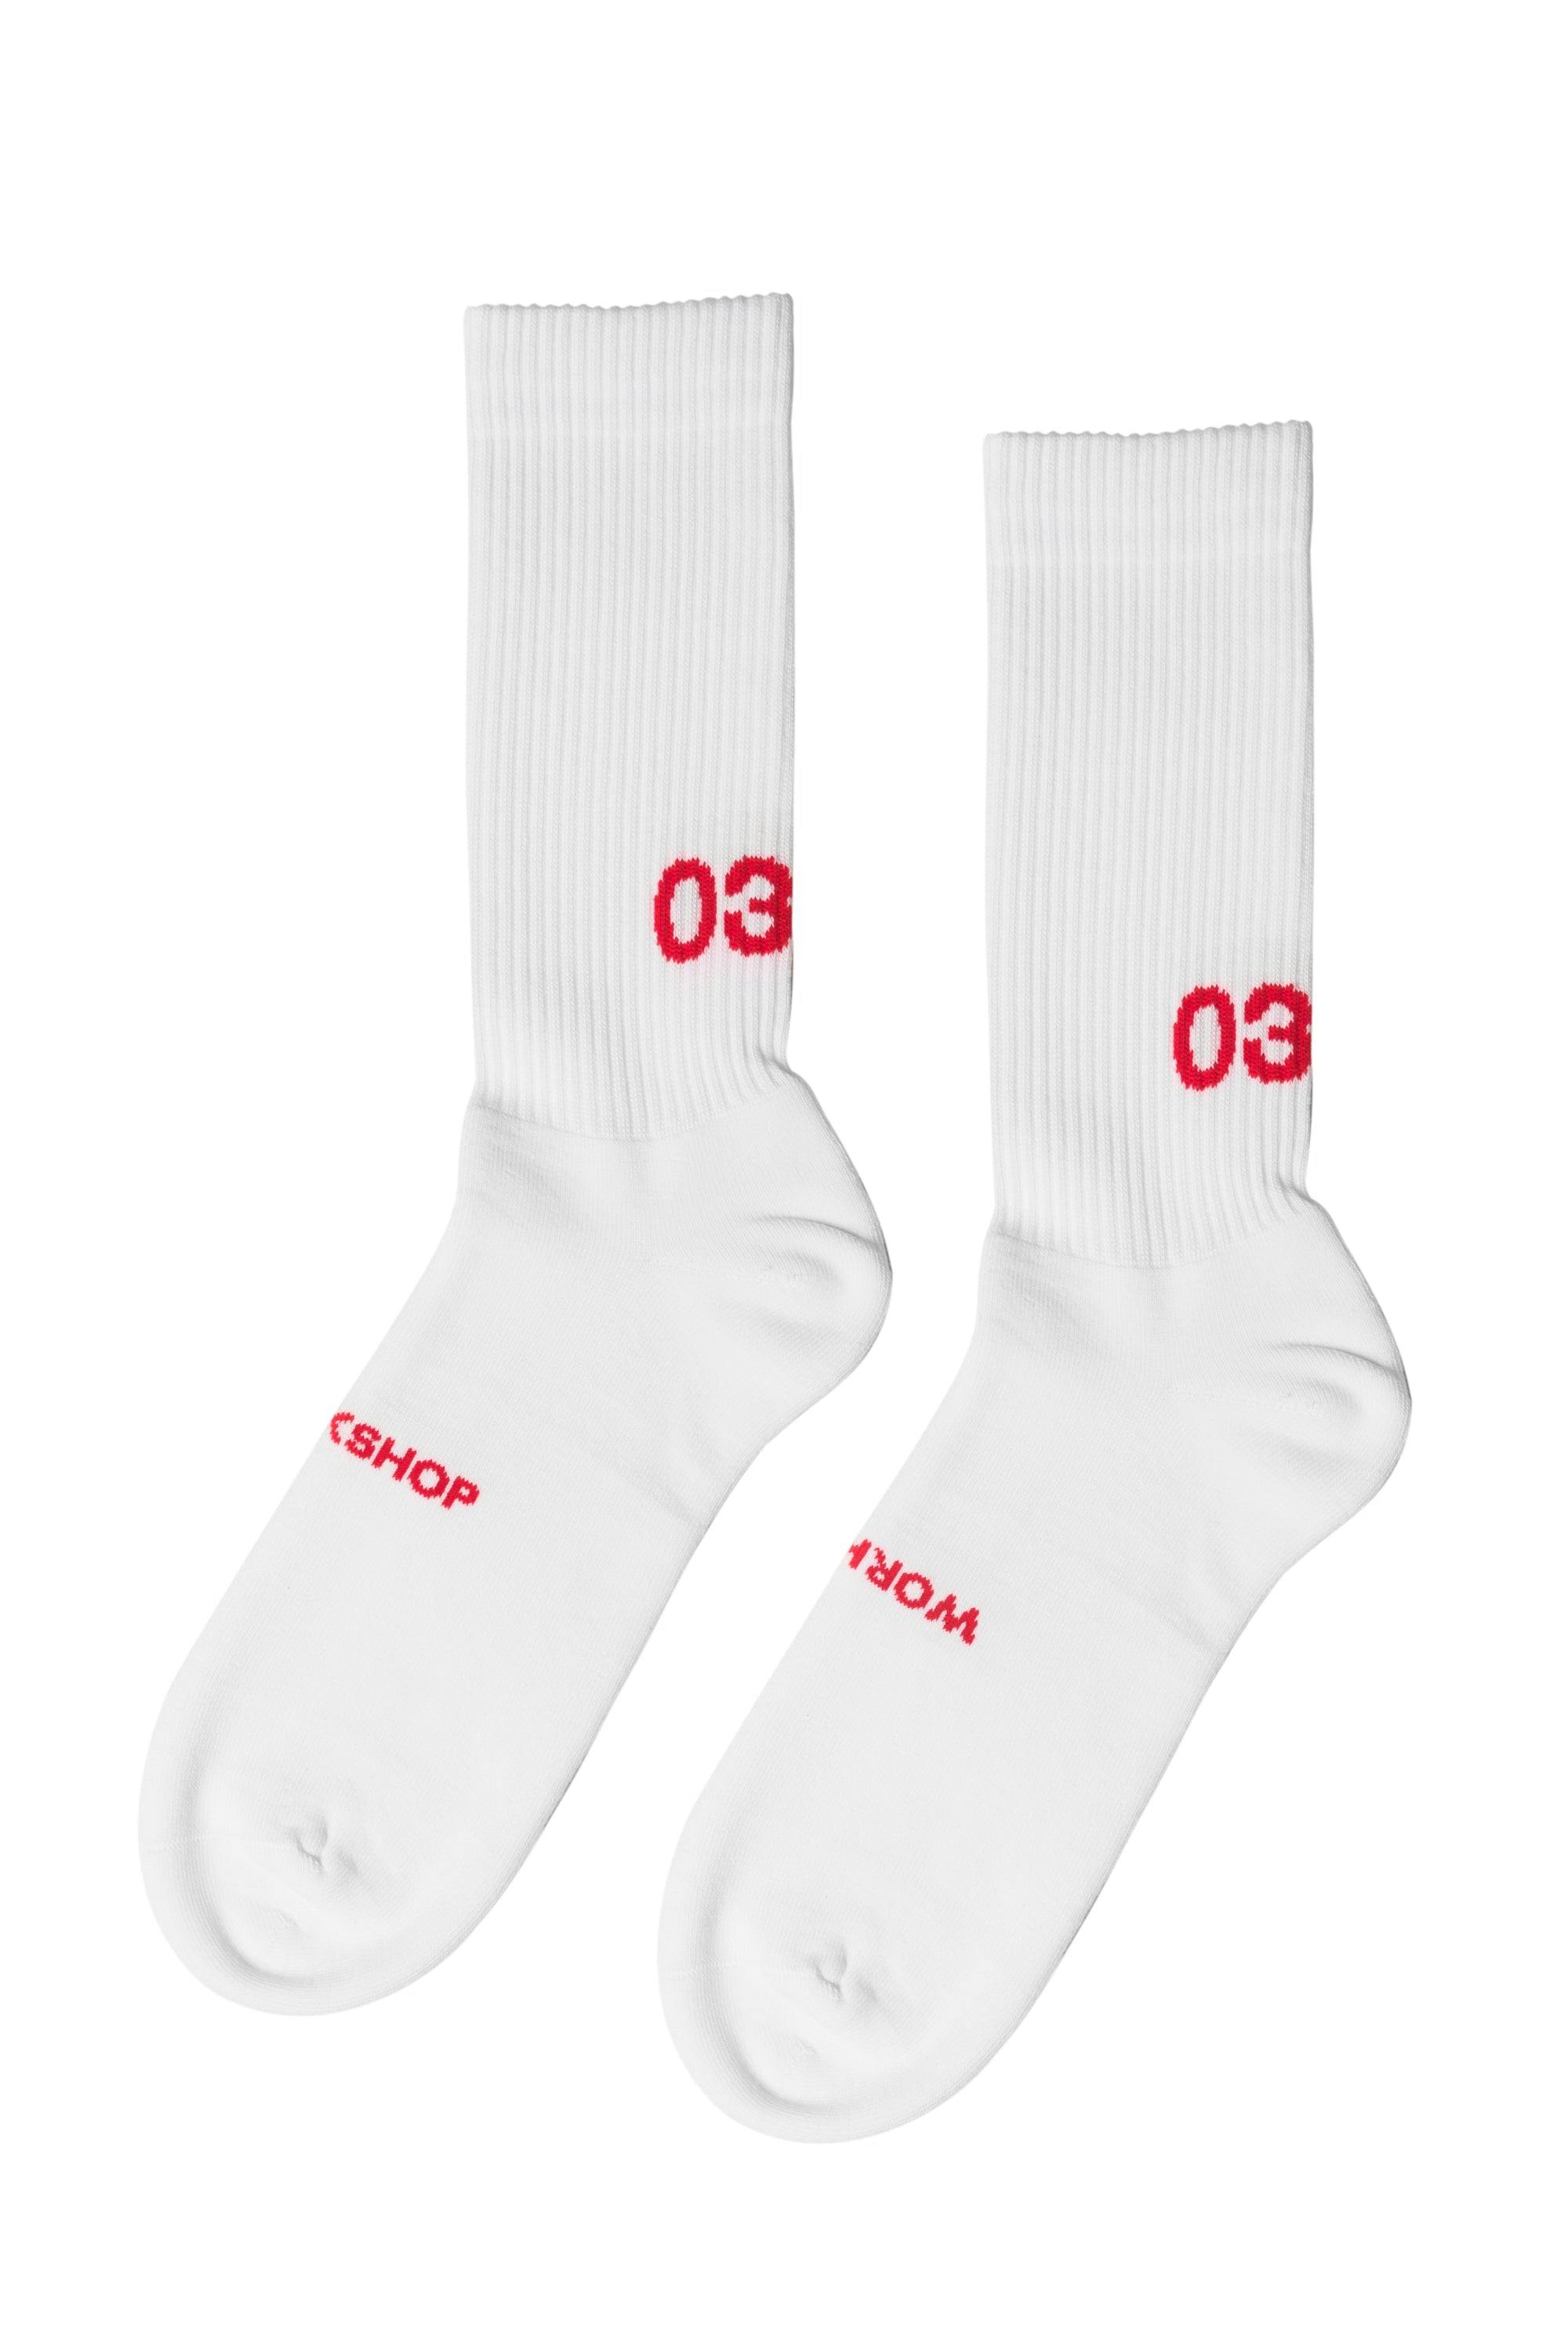 032c Socks Workshop White/Red - 20201105aw0153